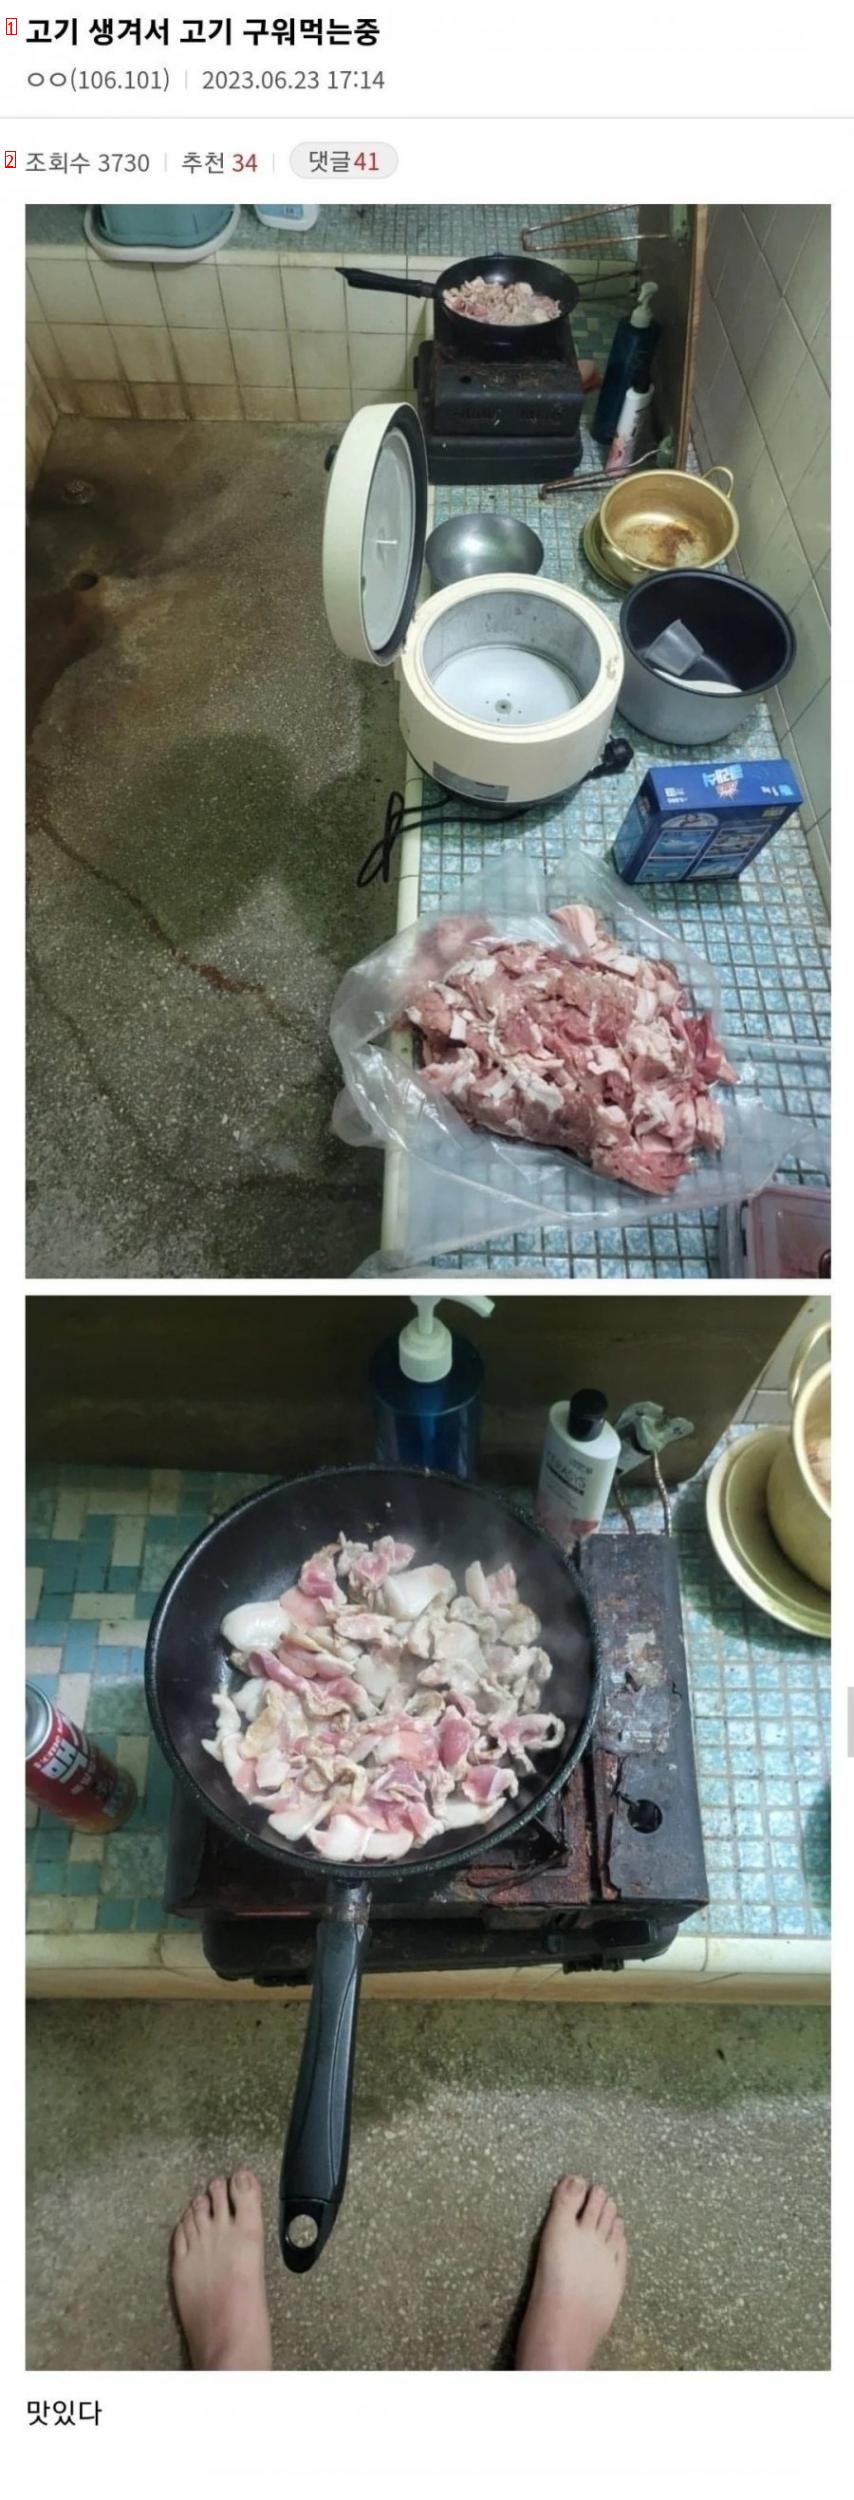 디갤] 고기가 생겨서 고기 구워 먹는 중.jpg